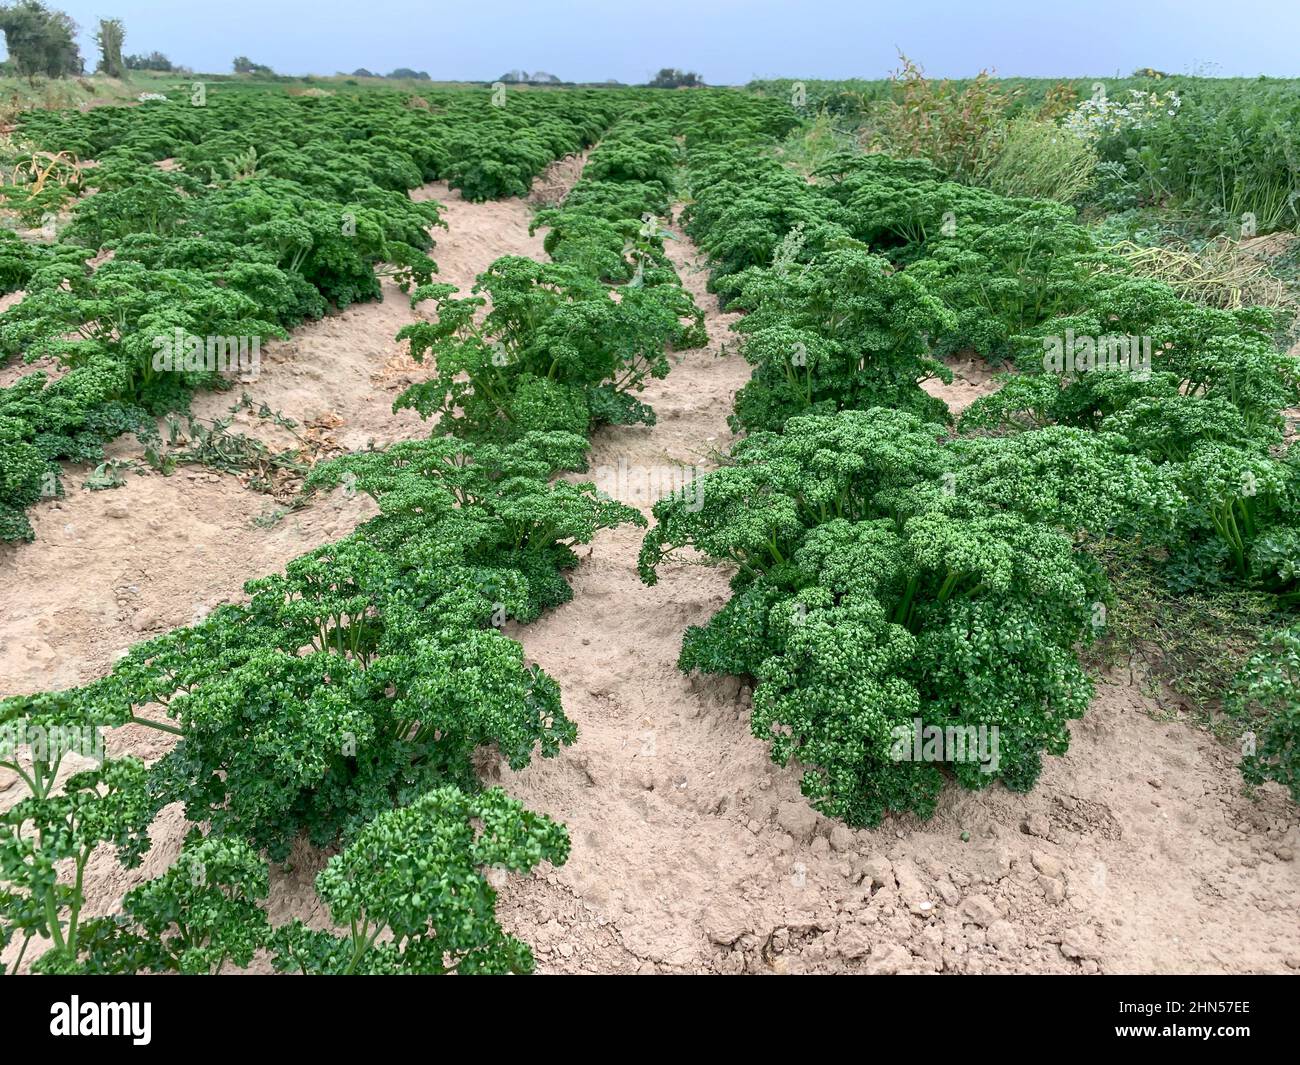 La Val de Saire in Normandia è nota per la coltivazione di ortaggi di  qualità come il kale in Francia Foto stock - Alamy